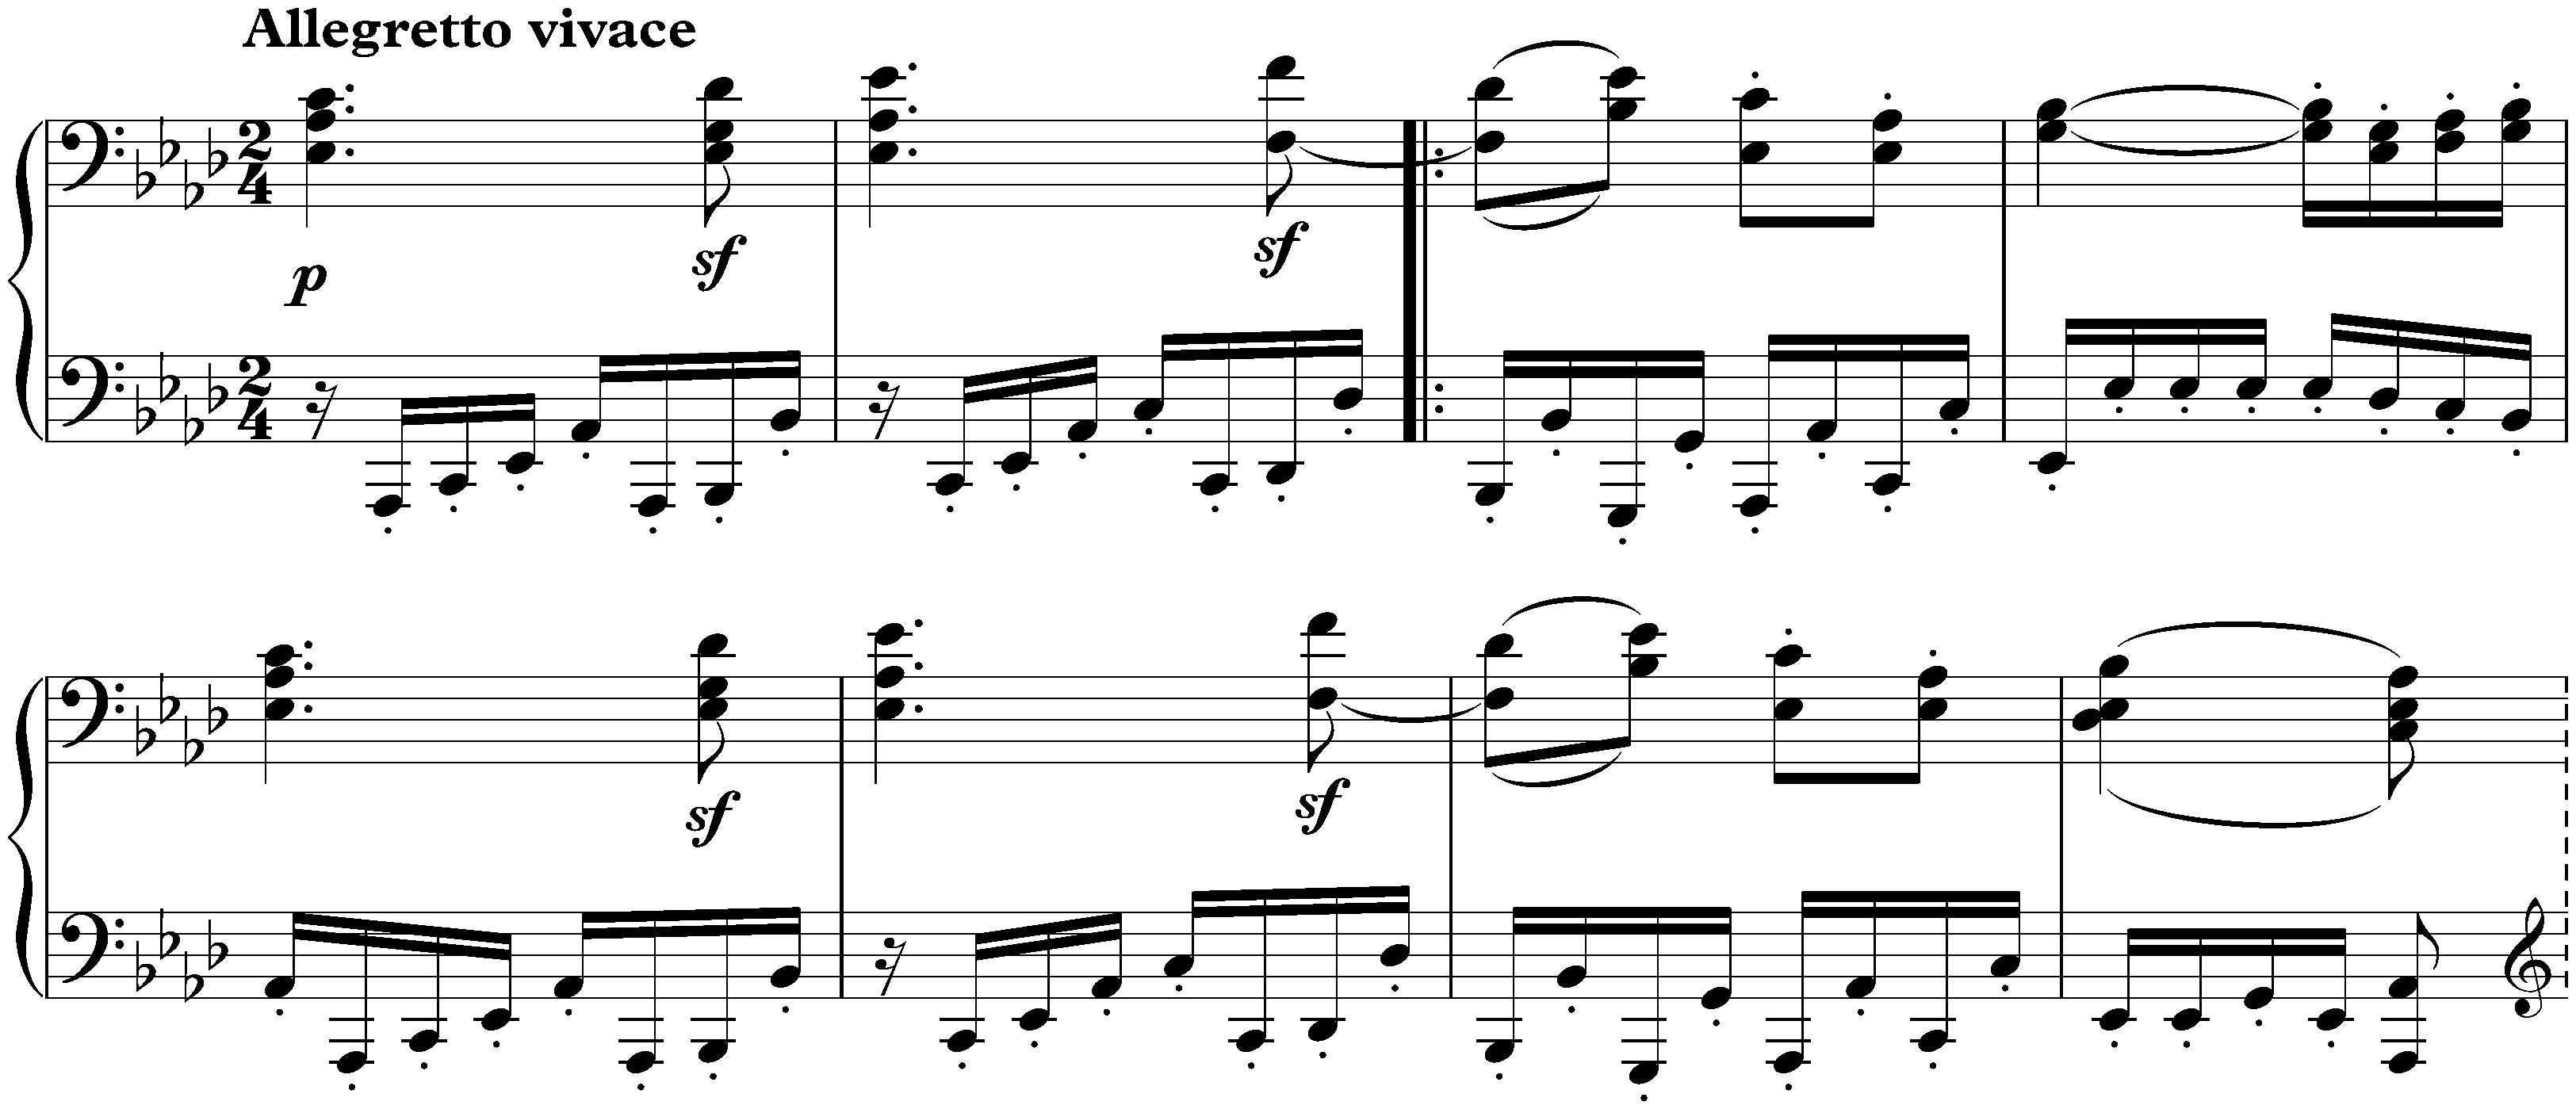 Sonata no. 18 in E-flat major, op. 31 no. 3; 2. Scherzo: Allegretto vivace